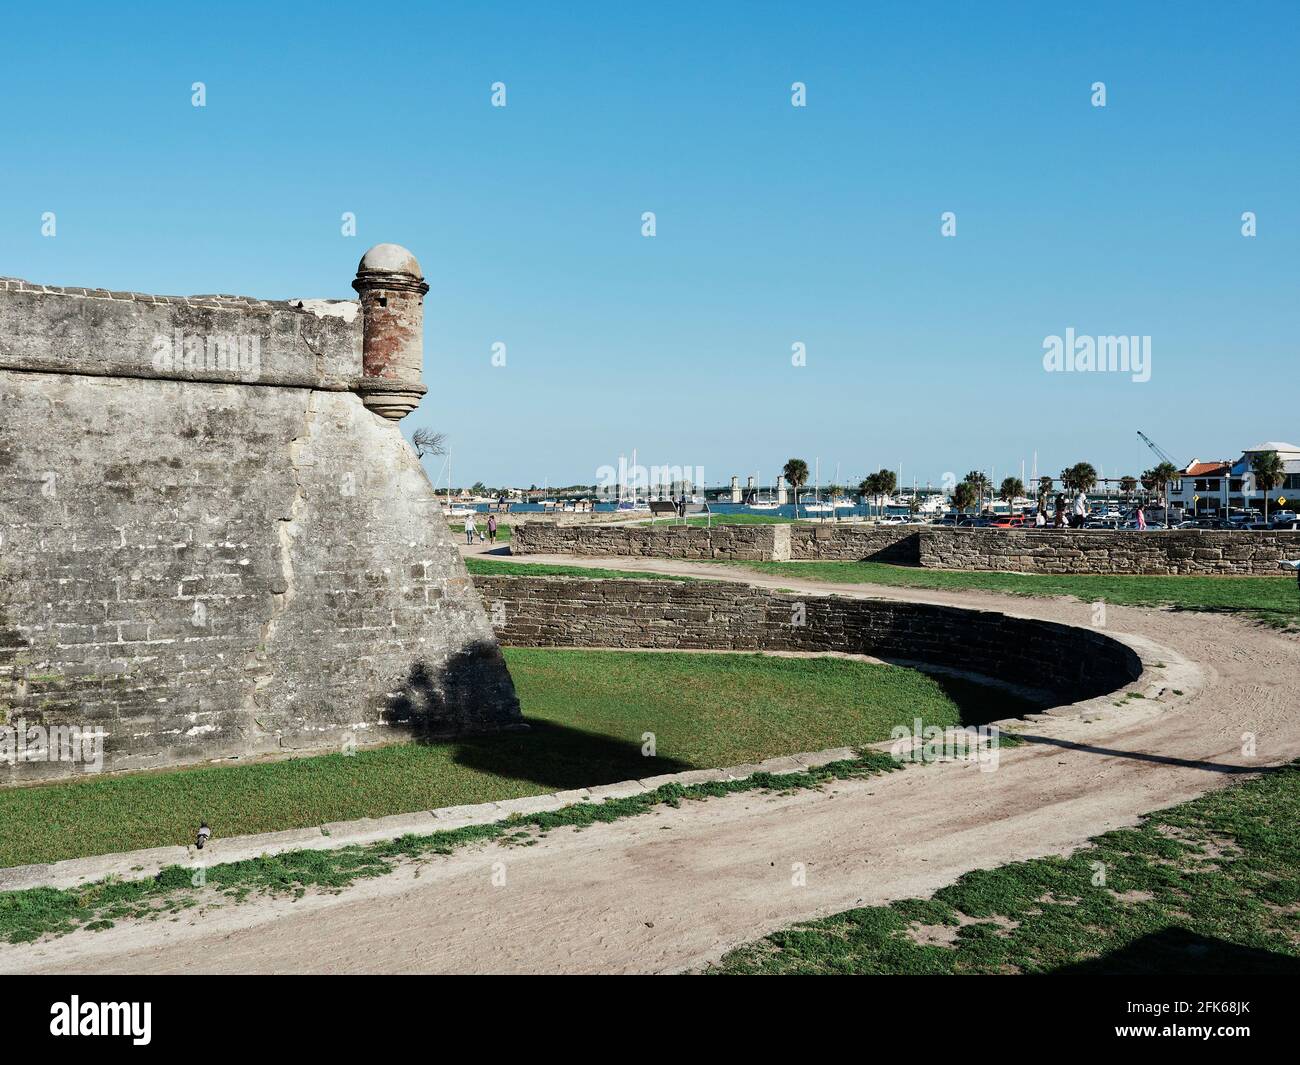 Castillo de San Marcos eine große spanische Steinfestung oder Festung aus dem 16. Jahrhundert bewacht den Hafen in St. Augustine, Florida, USA. Stockfoto